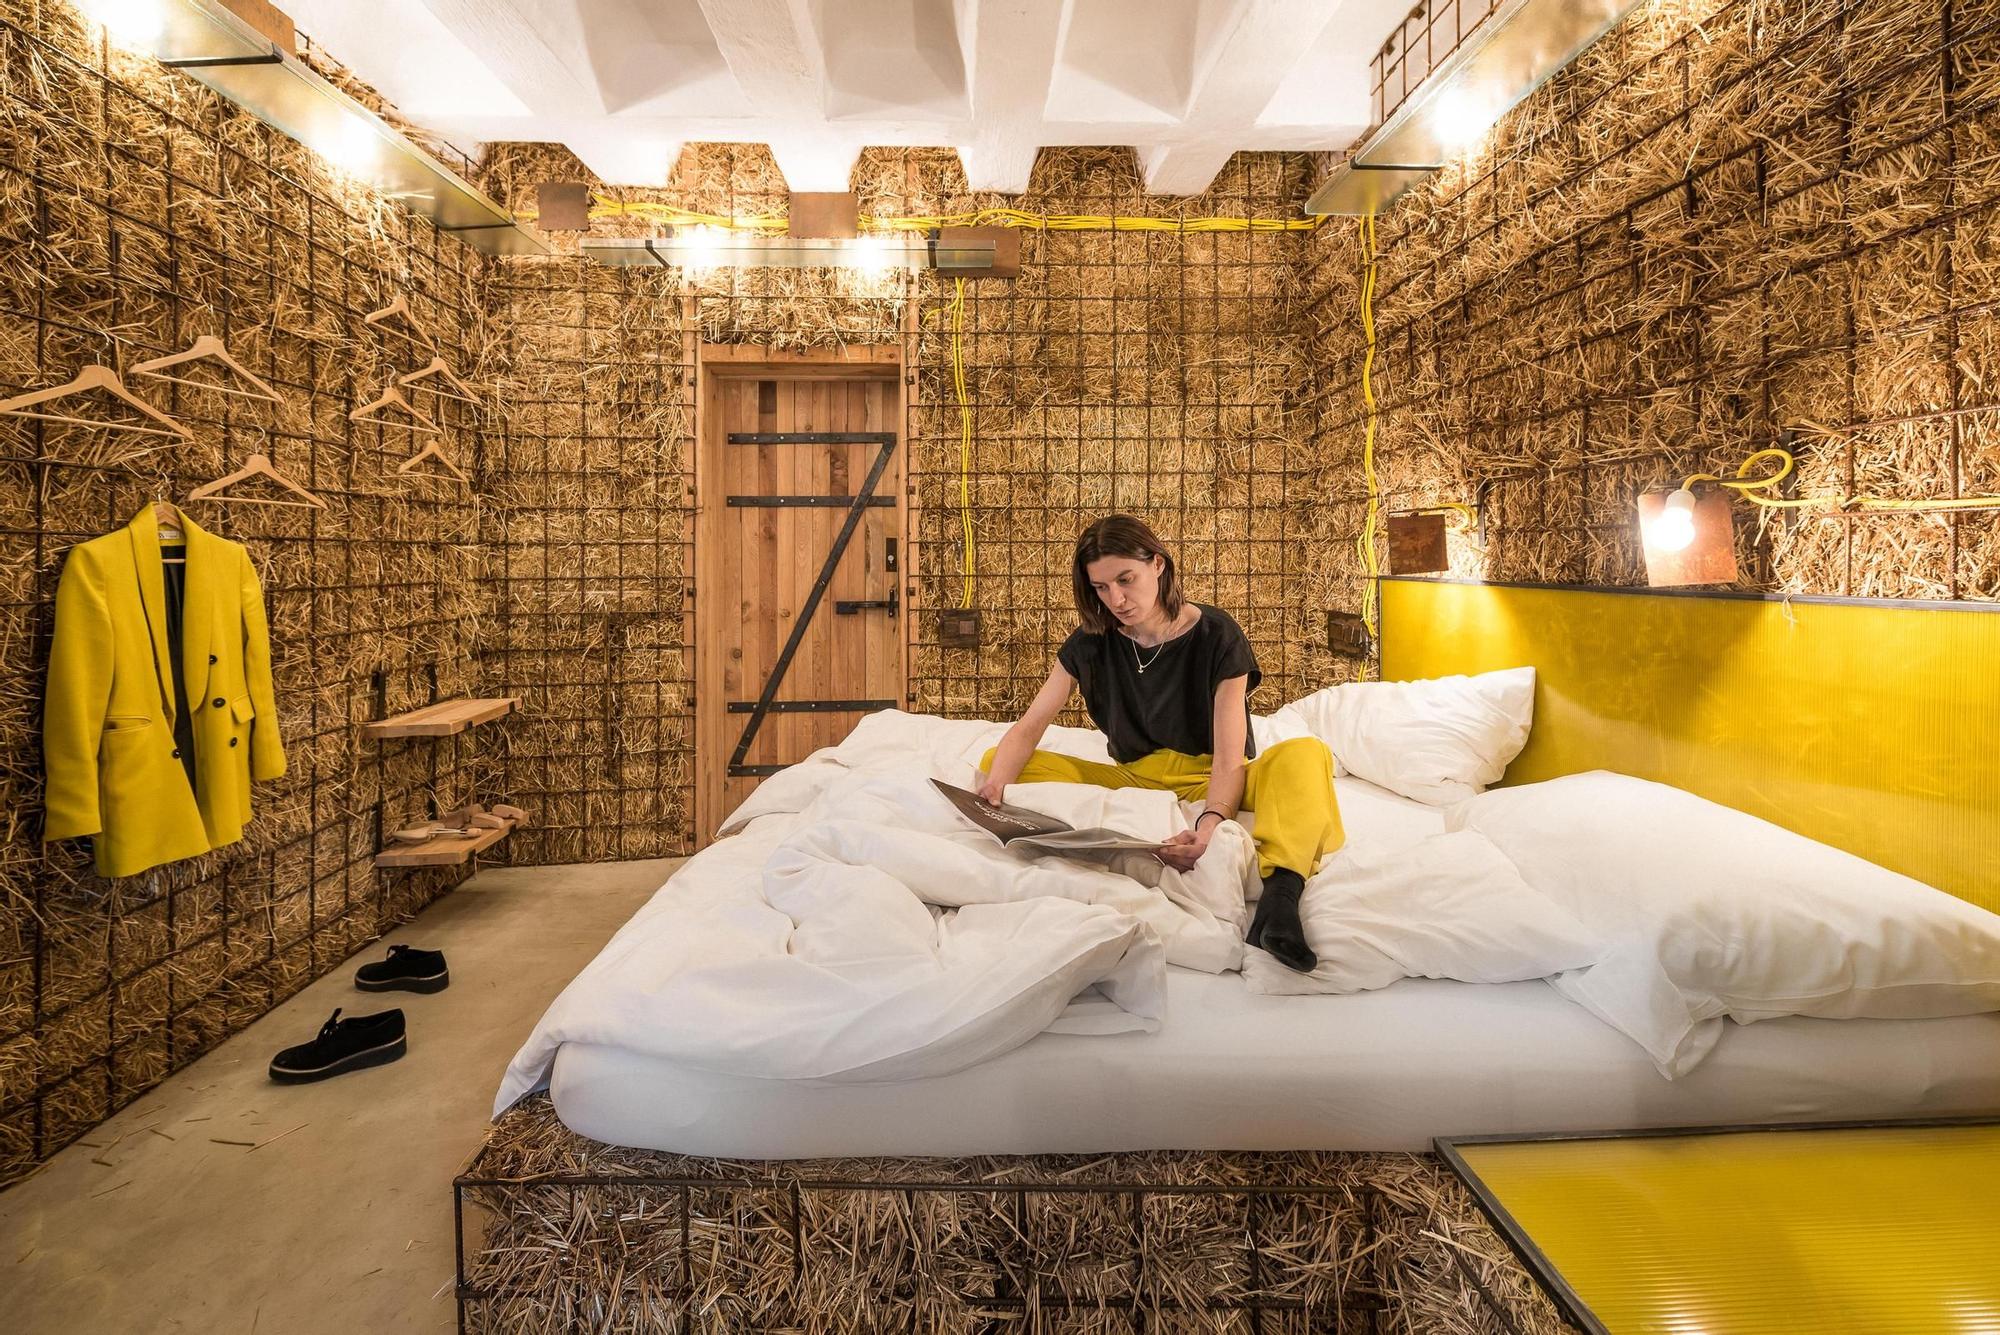 Una de las habitaciones más curiosas de Viena es parte de una empresa familiar